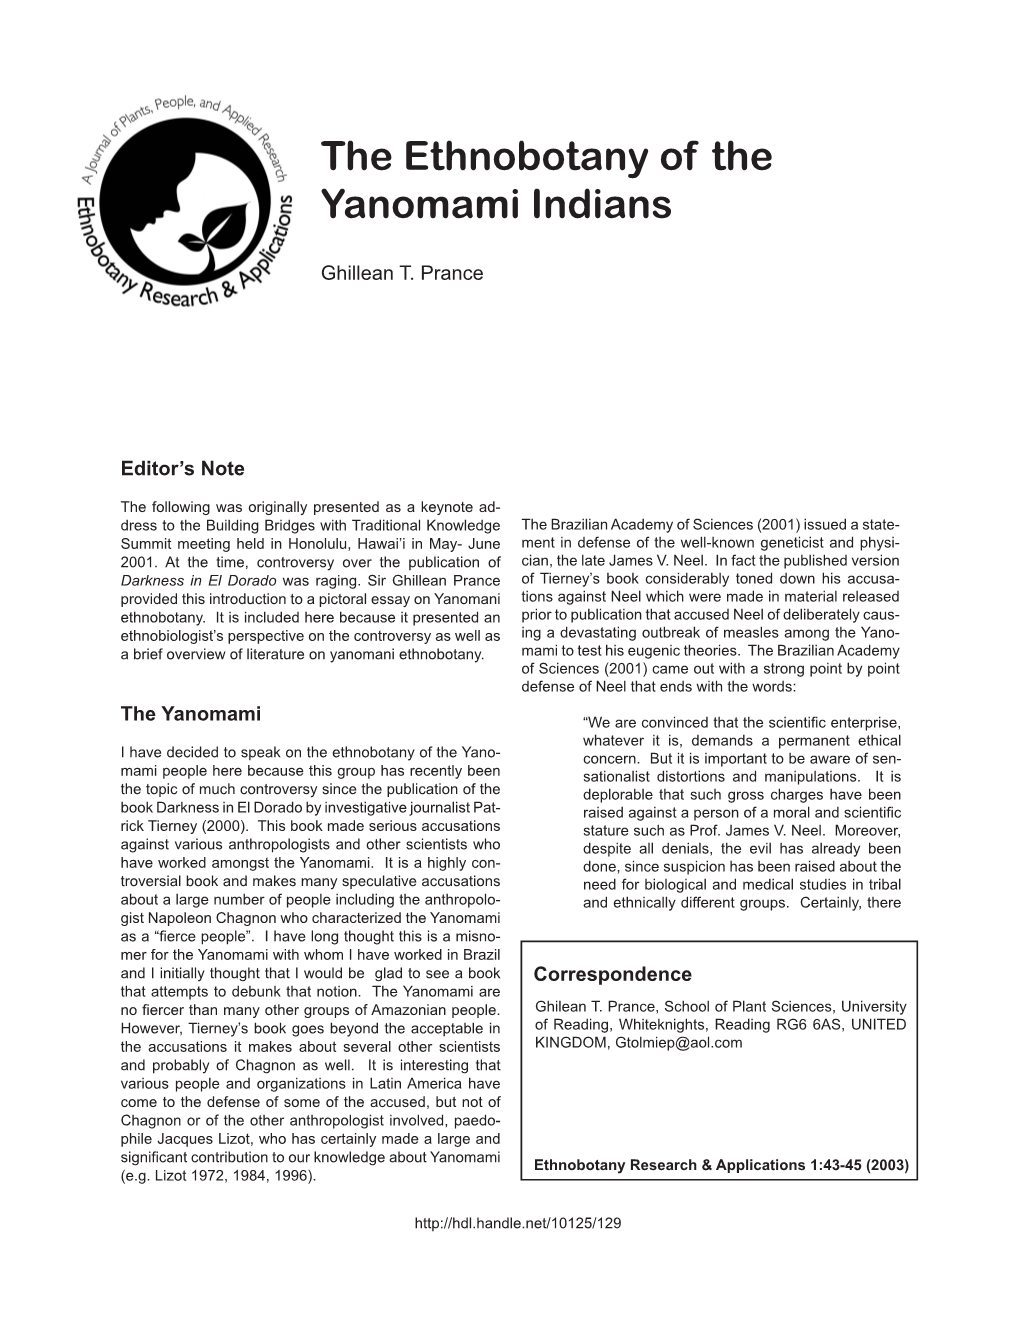 The Ethnobotany of the Yanomami Indians